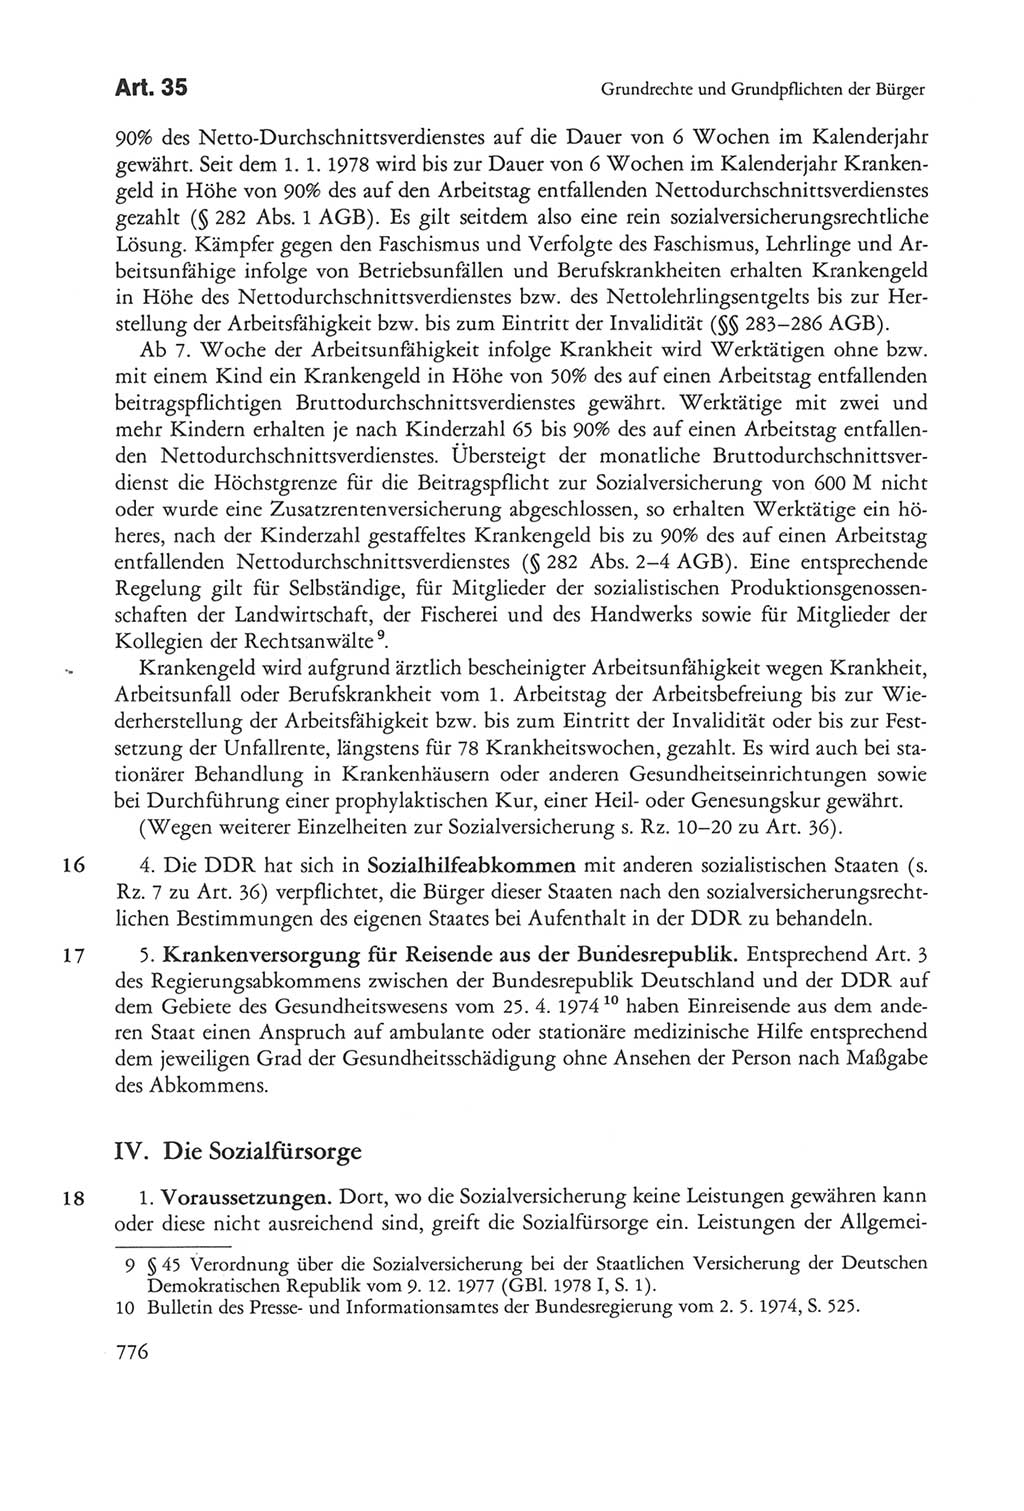 Die sozialistische Verfassung der Deutschen Demokratischen Republik (DDR), Kommentar mit einem Nachtrag 1997, Seite 776 (Soz. Verf. DDR Komm. Nachtr. 1997, S. 776)